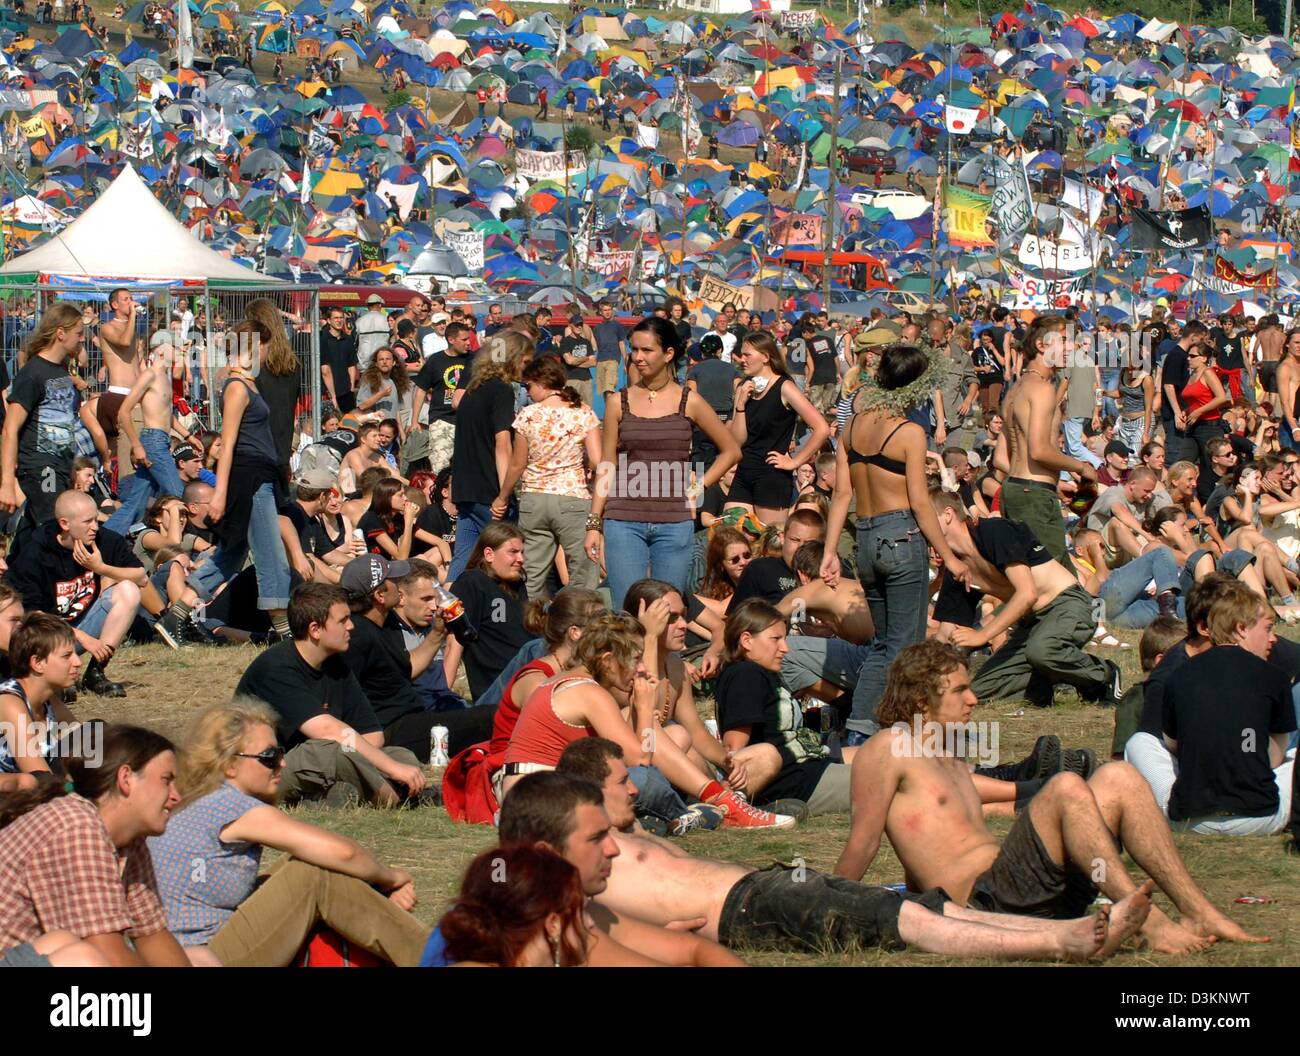 (Afp) - l'image montre les visiteurs de l'open air festival 'Willa Arte Woodstock" (STOP) Woodstock à Nowy, Pologne, 05 août 2005. Le plus grand festival muic a lieu ici le vendredi 05 août et samedi 06 août 2005. Selon les rapports du directeur du festival Jurek Owsiak, 30 bandes de rock et folk de la Pologne, l'Allemagne, l'Ucraine et les États-Unis vont effectuer pendant Banque D'Images